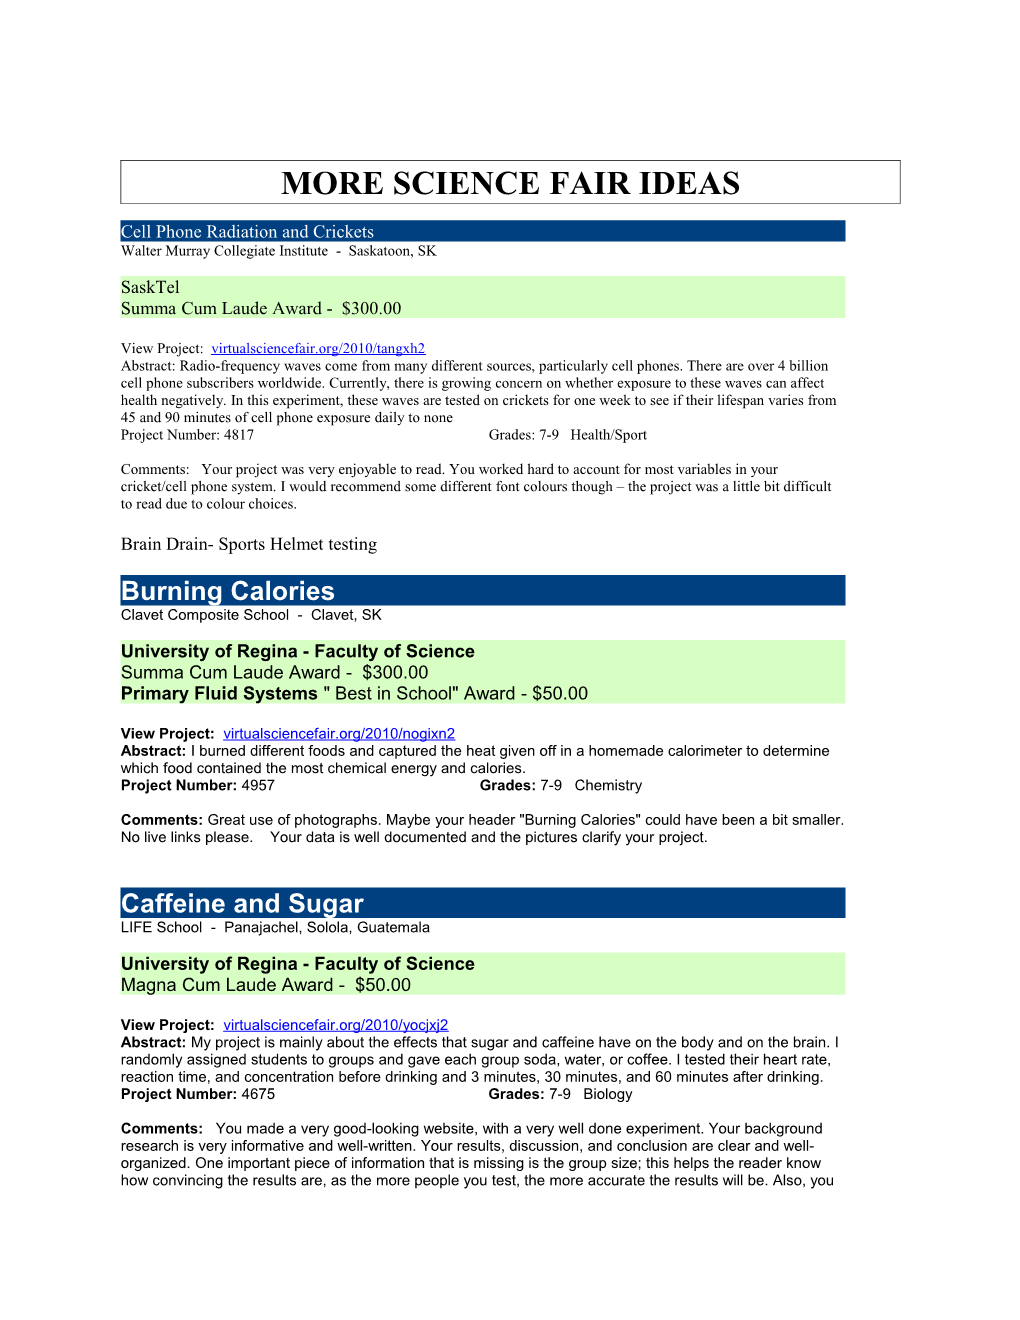 More Science Fair Ideas